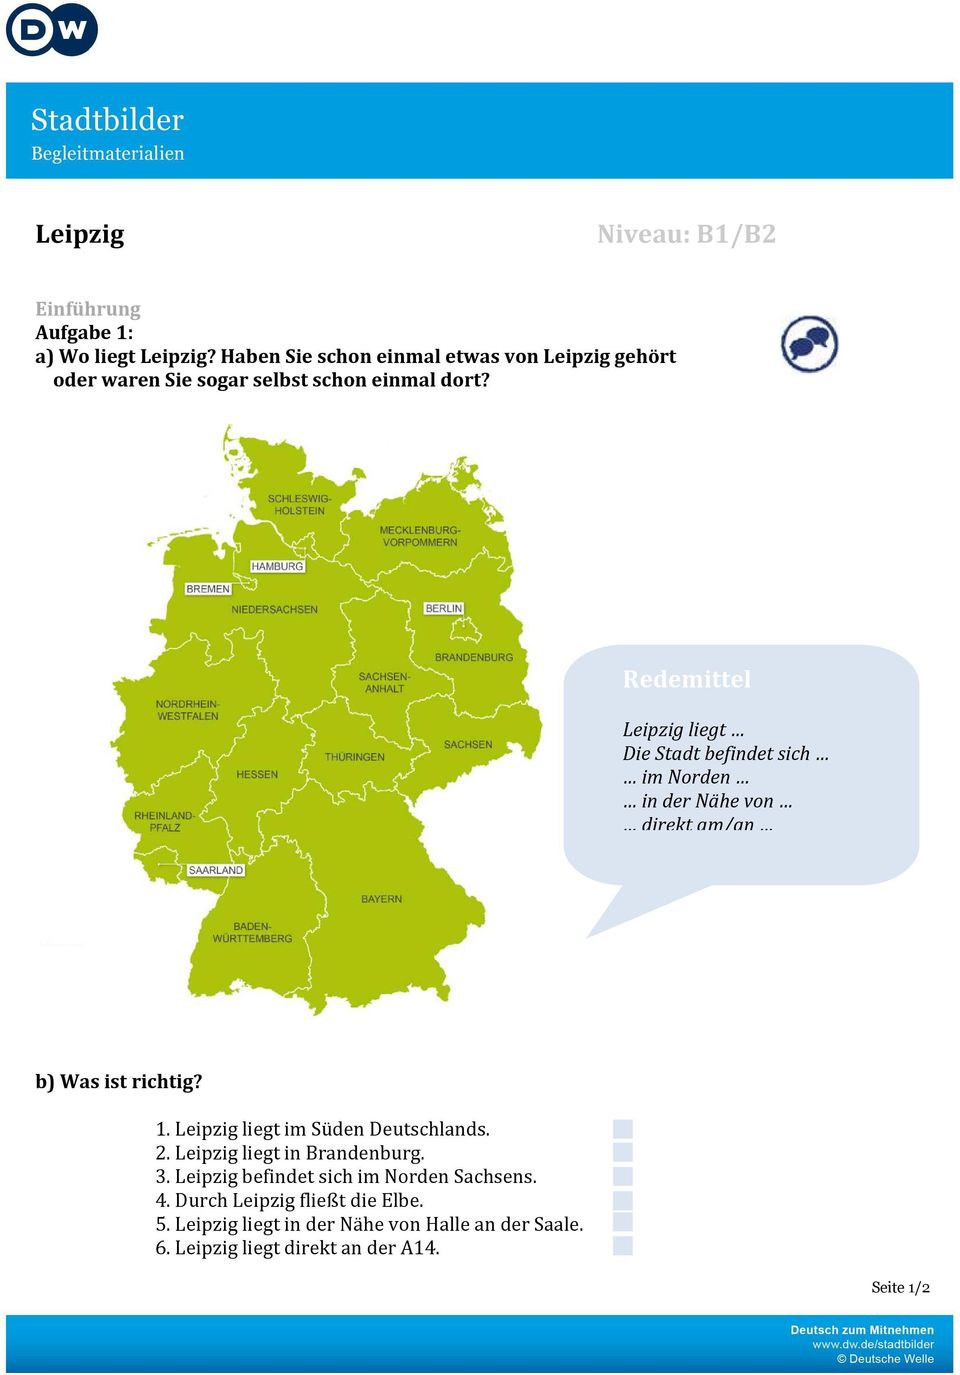 Redemittel Leipzig liegt Die Stadt befindet sich im Norden in der Nähe von direkt am/an b) Was ist richtig? 1.